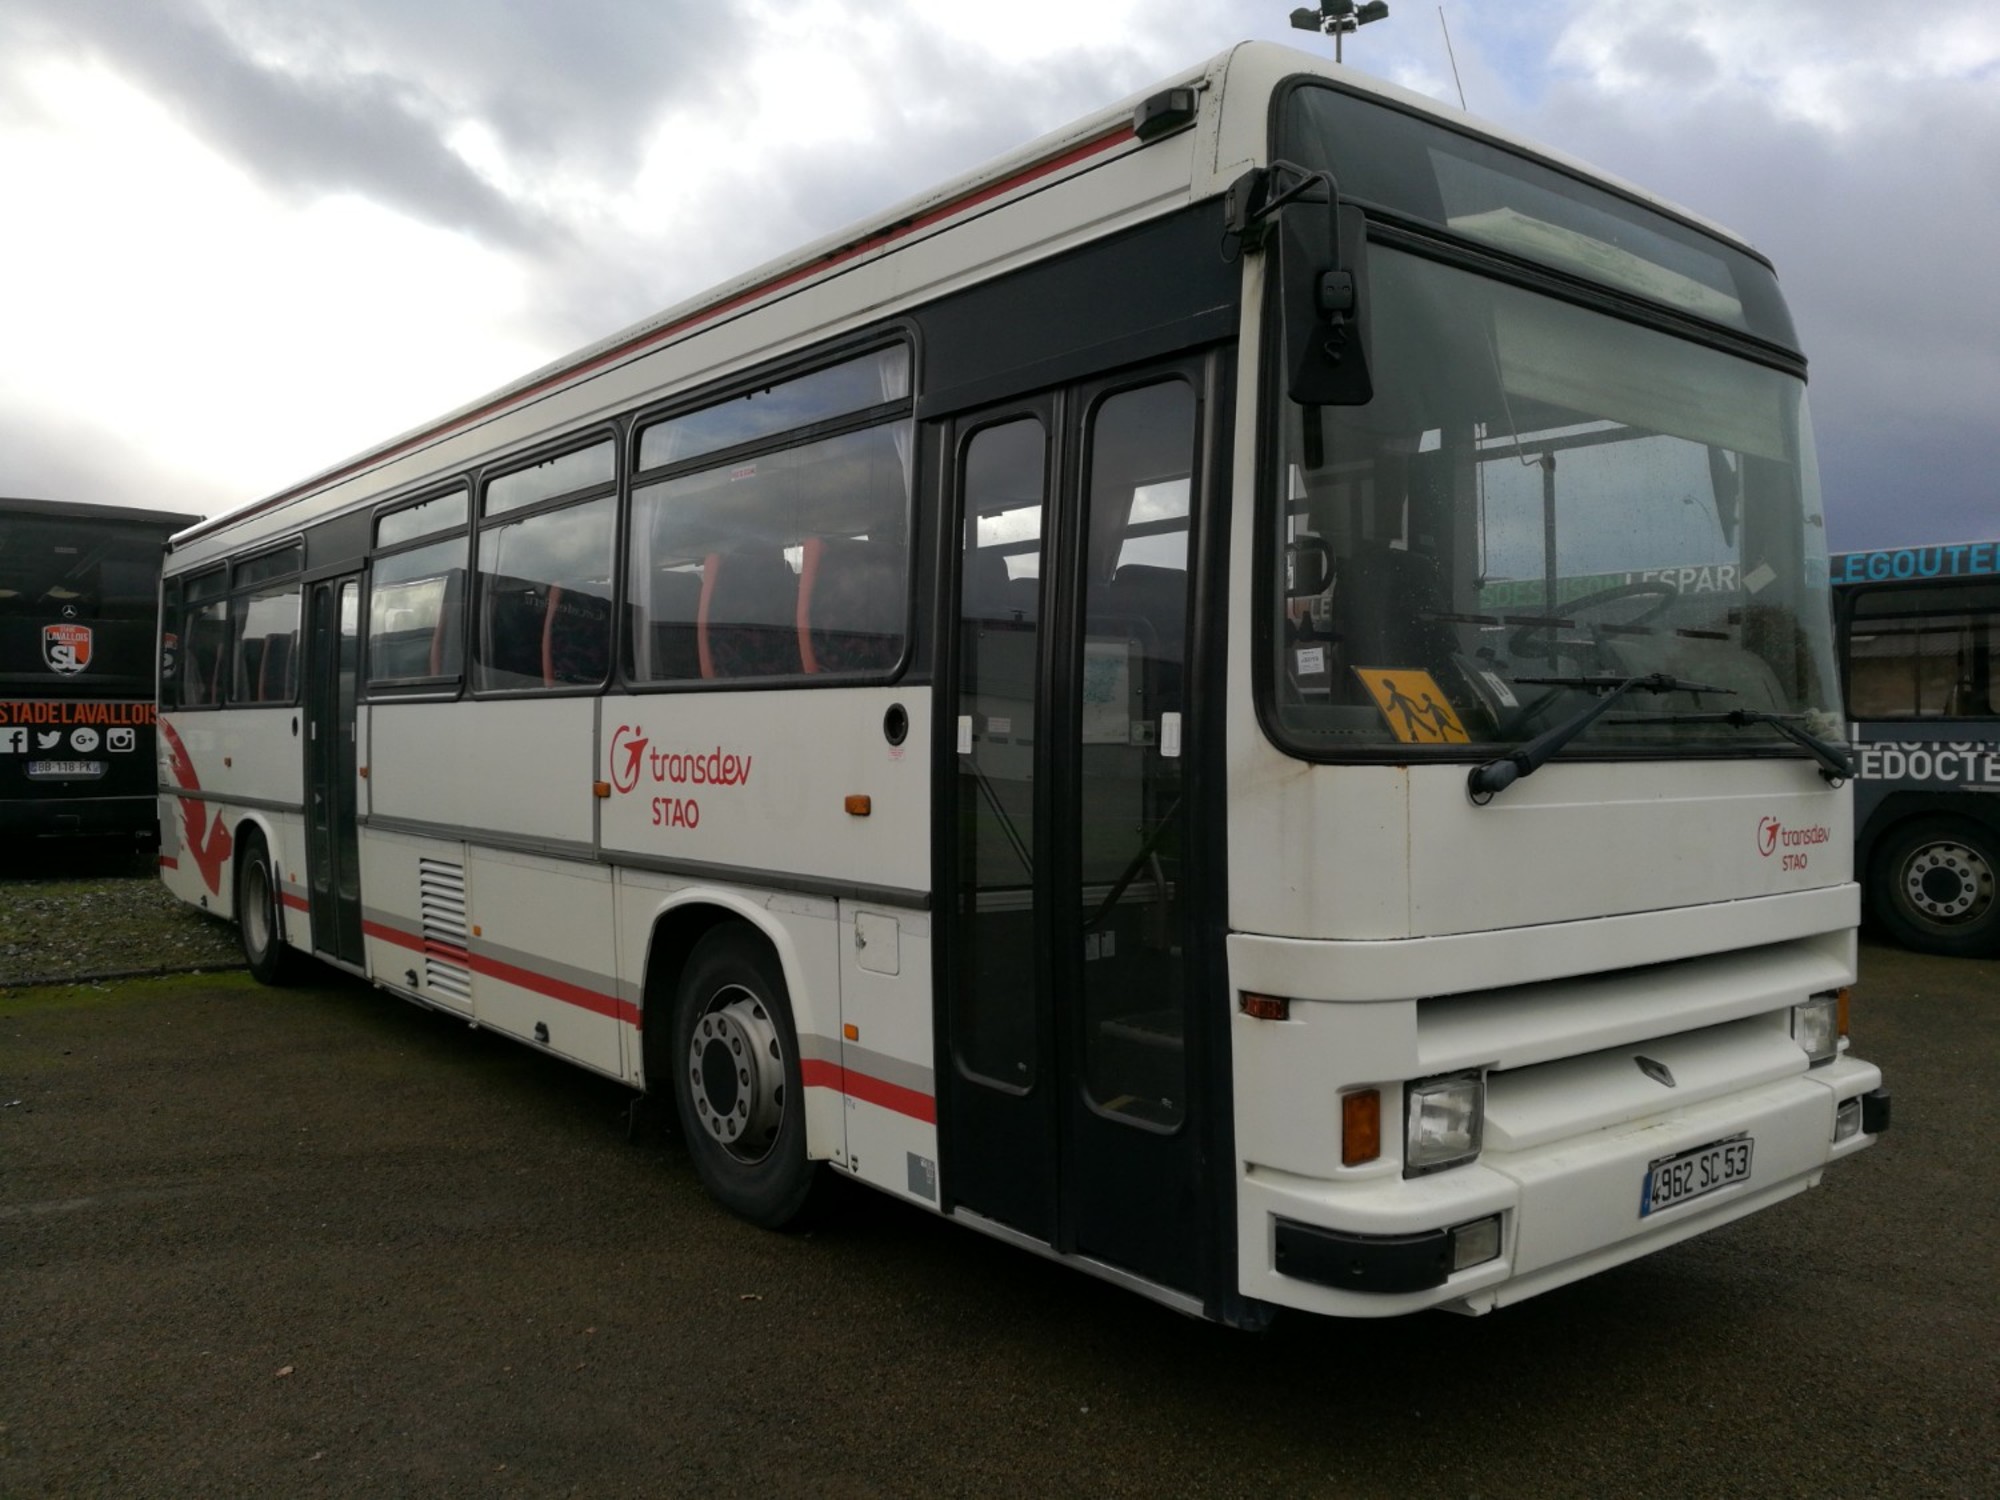 Renault Tracer 6525 Car Bus d'occasion aux enchères